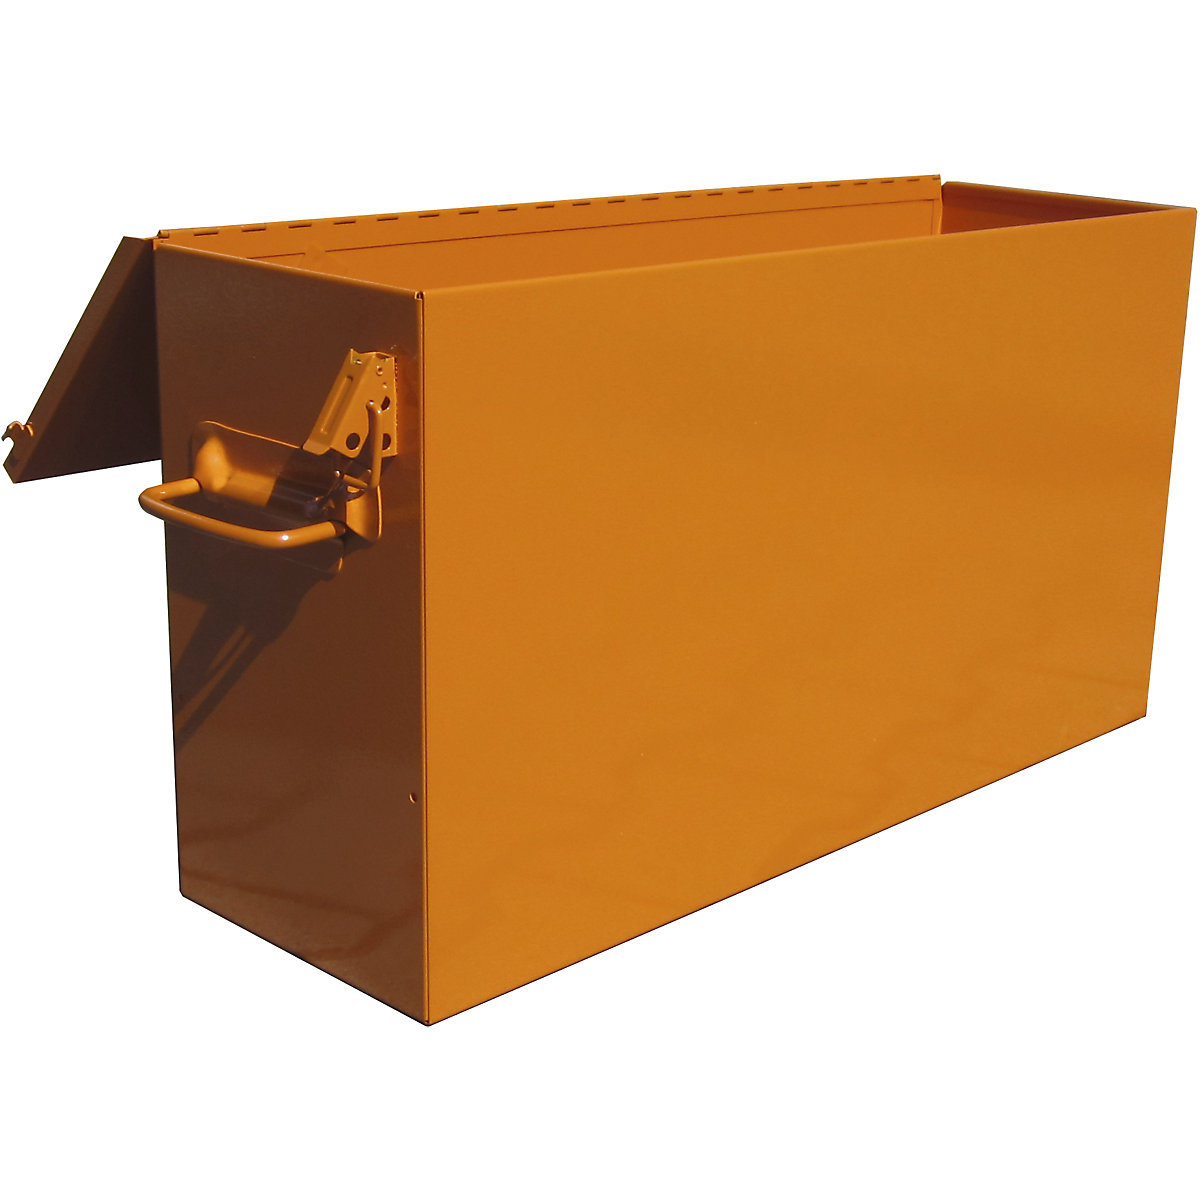 Greifzugbox, orange, für Greifzug mit Tragfähigkeit 3200 kg-1